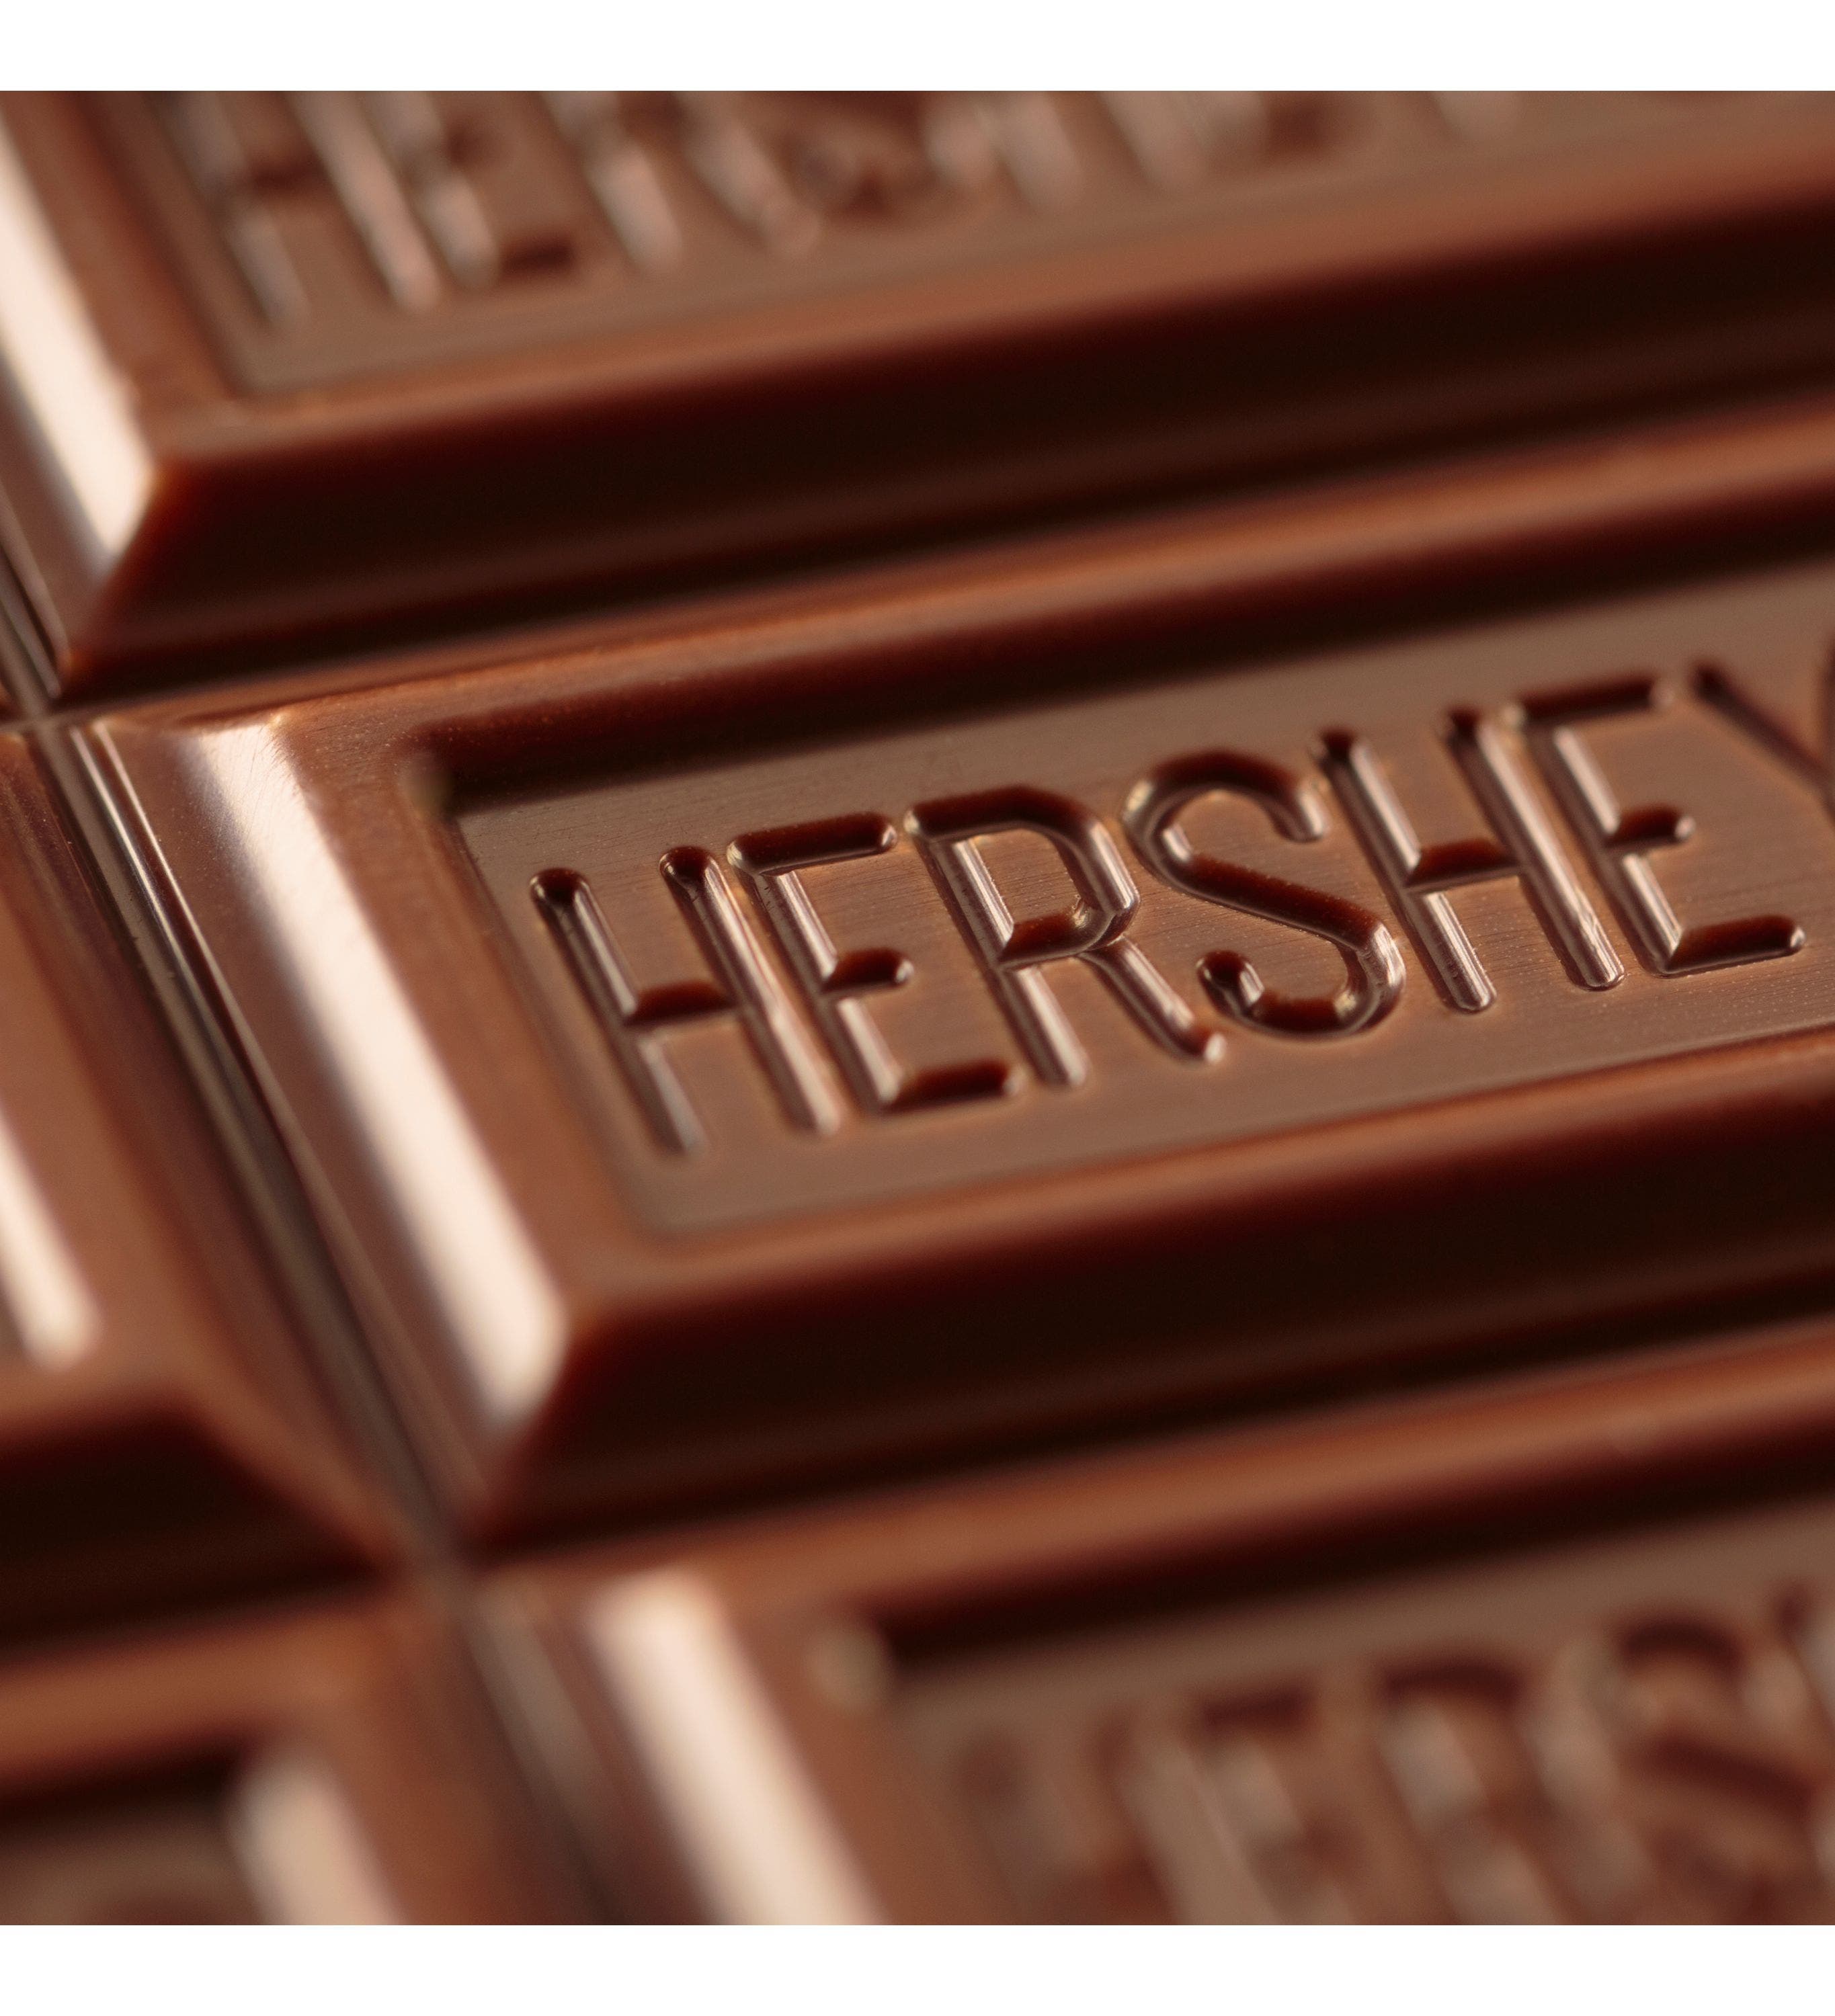 Foco num pedaço do chocolate HERSHEY’S, que mostra o nome da marca.